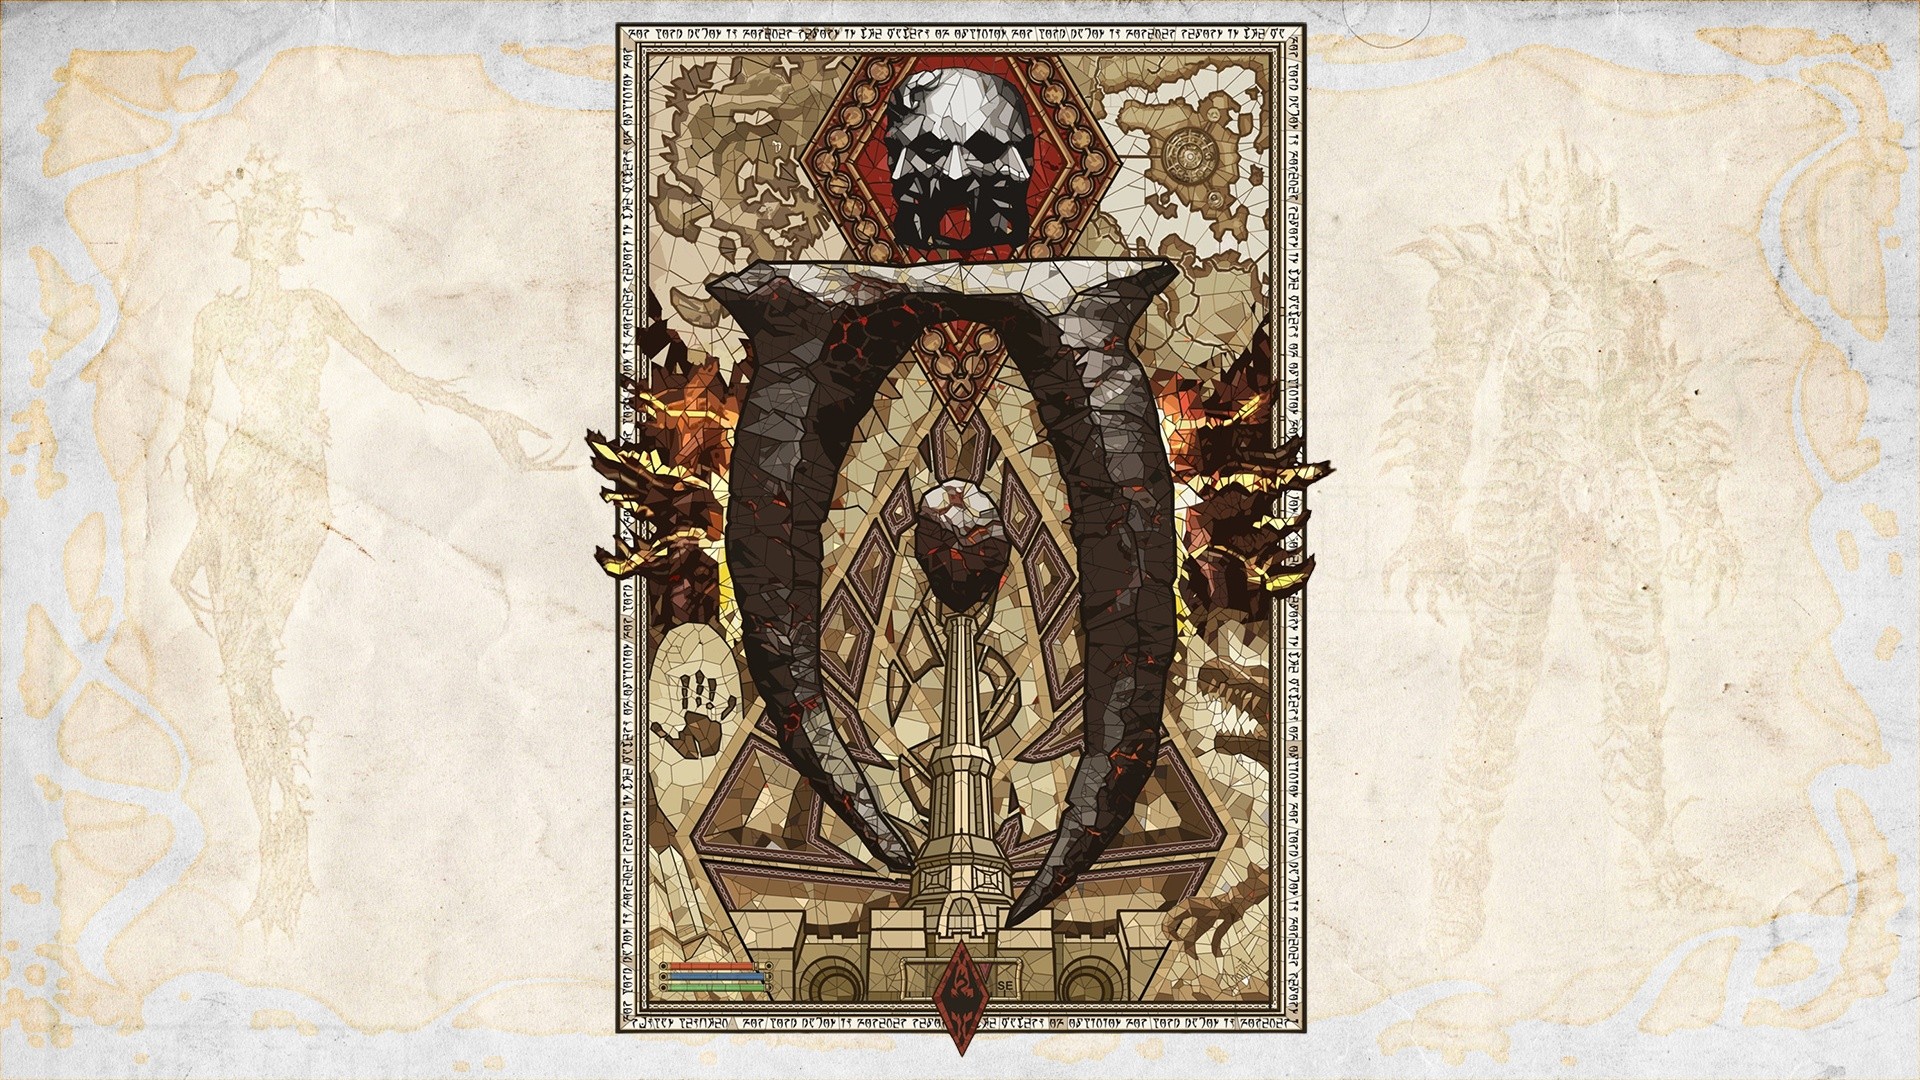 Elder Scrolls IV: Oblivion Wallpapers